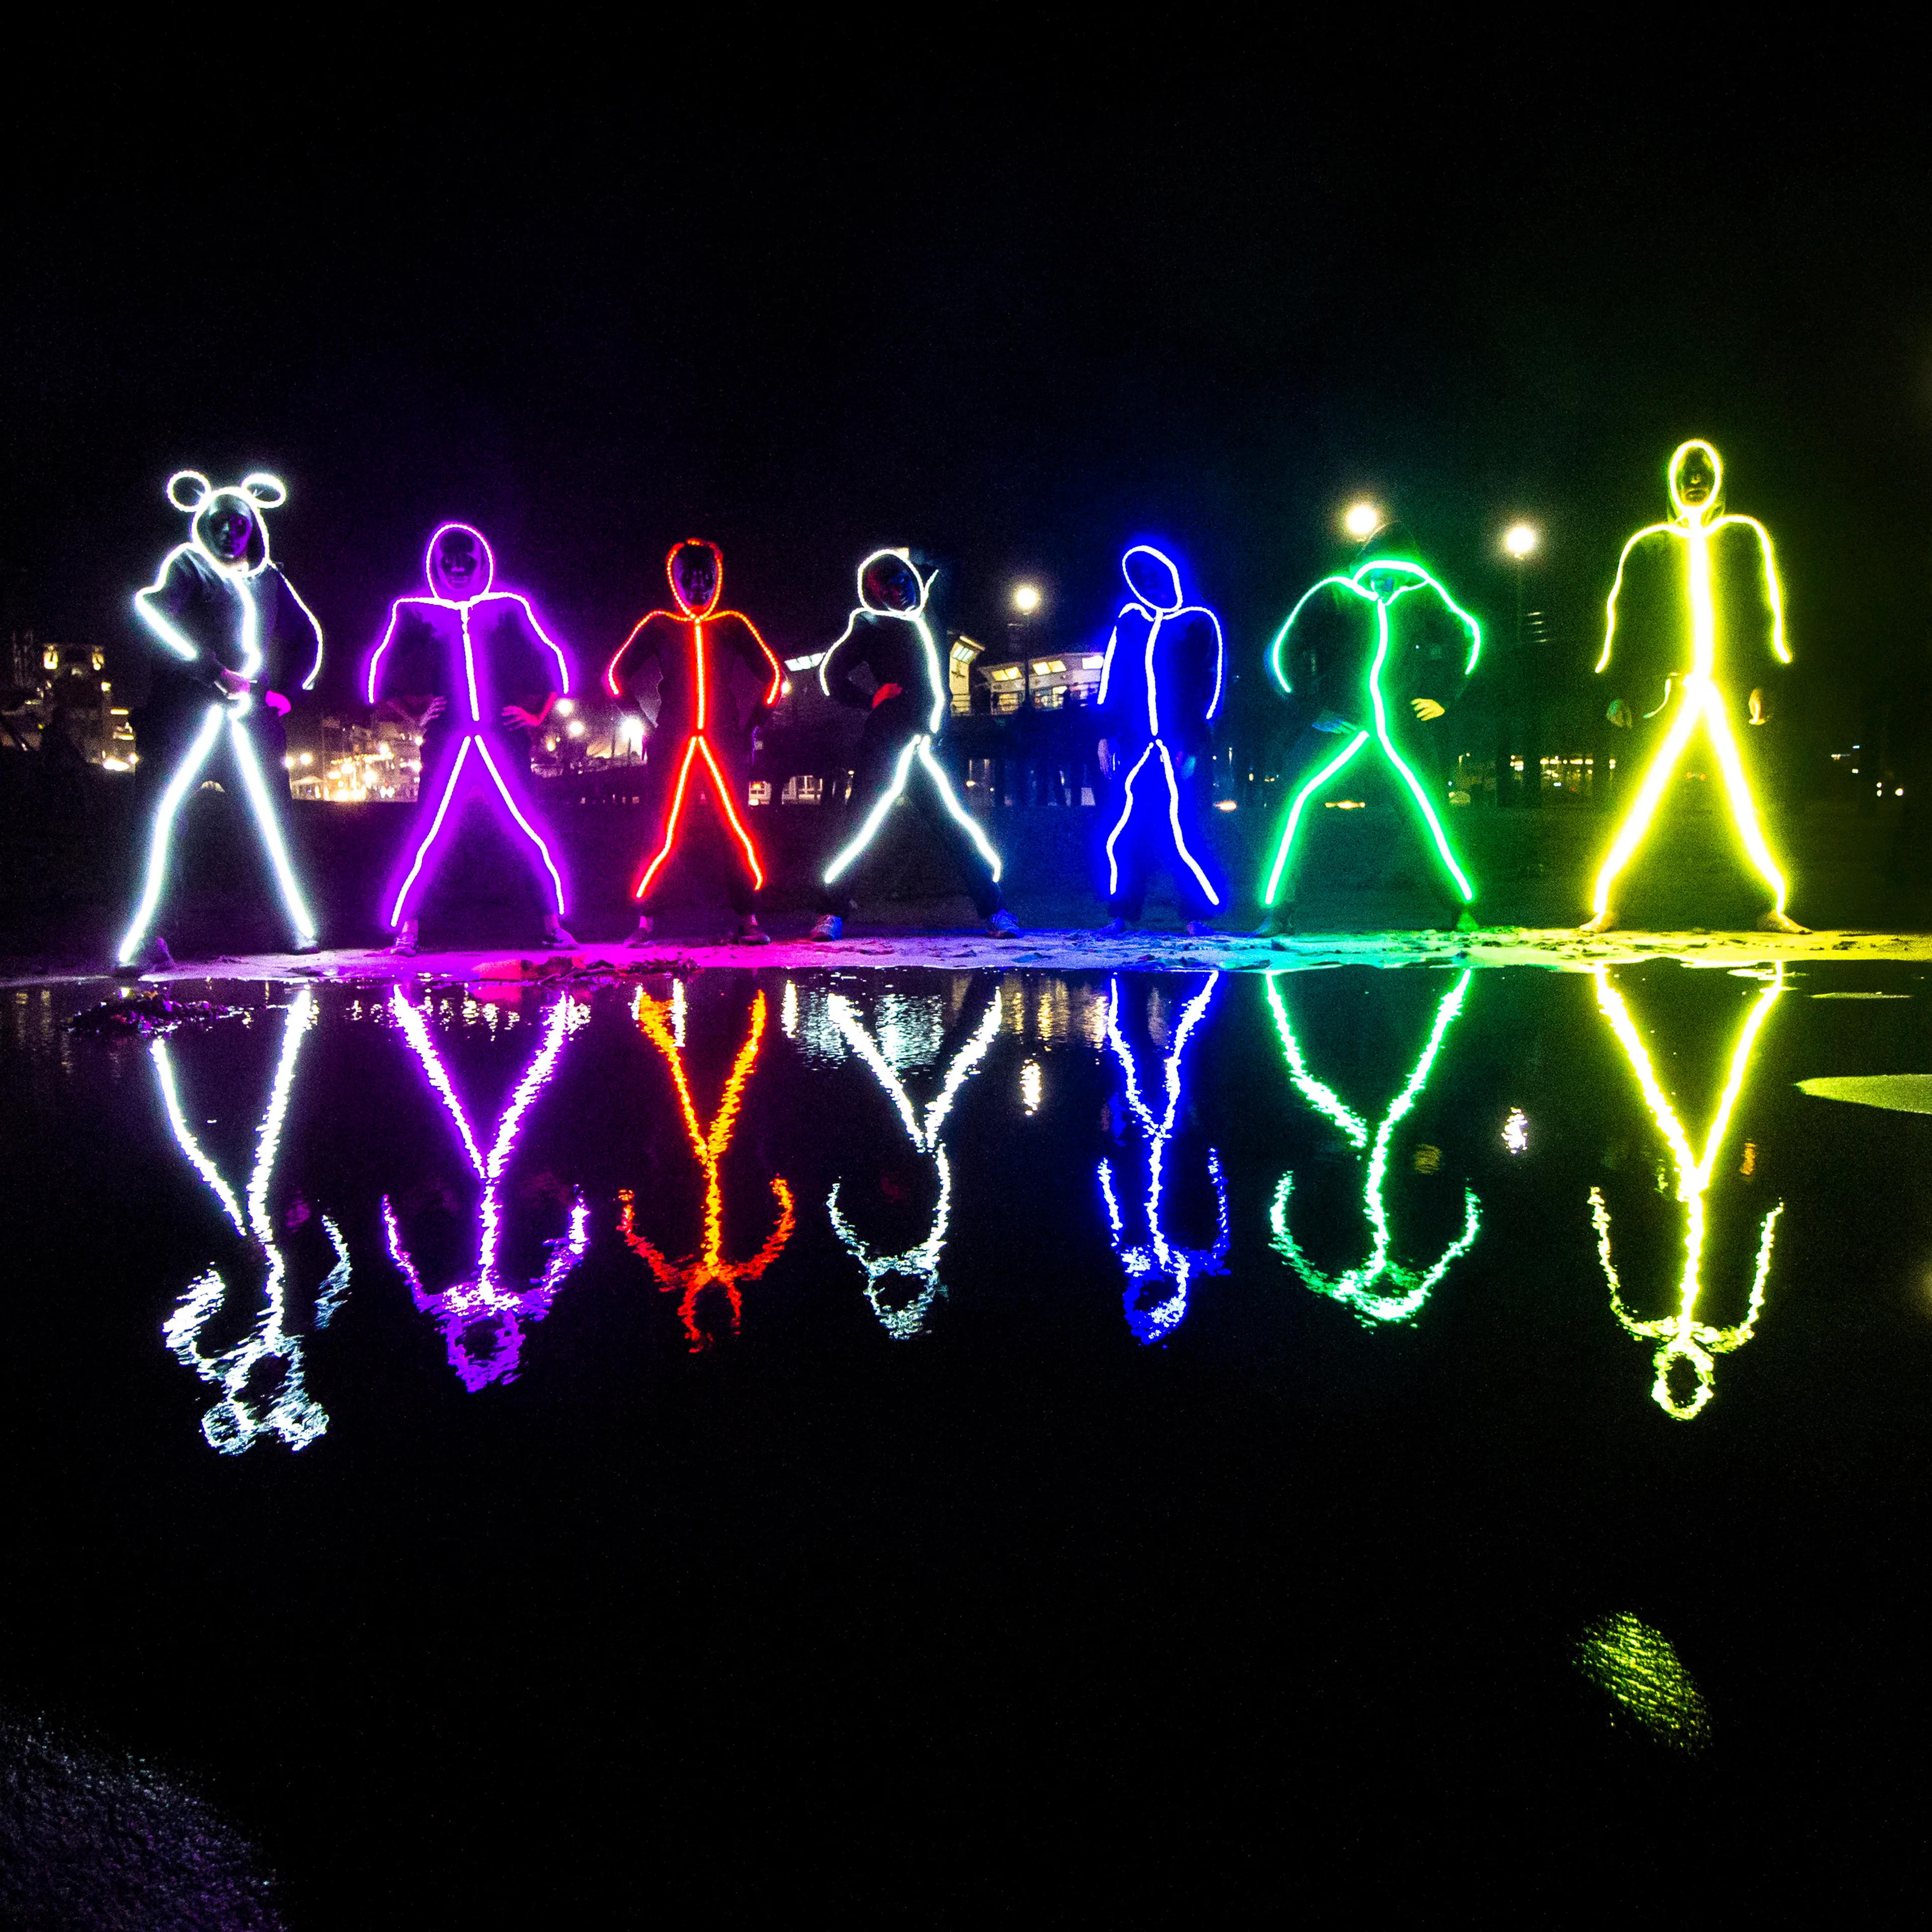 Adult LED stickman costume by Glowy Zoey